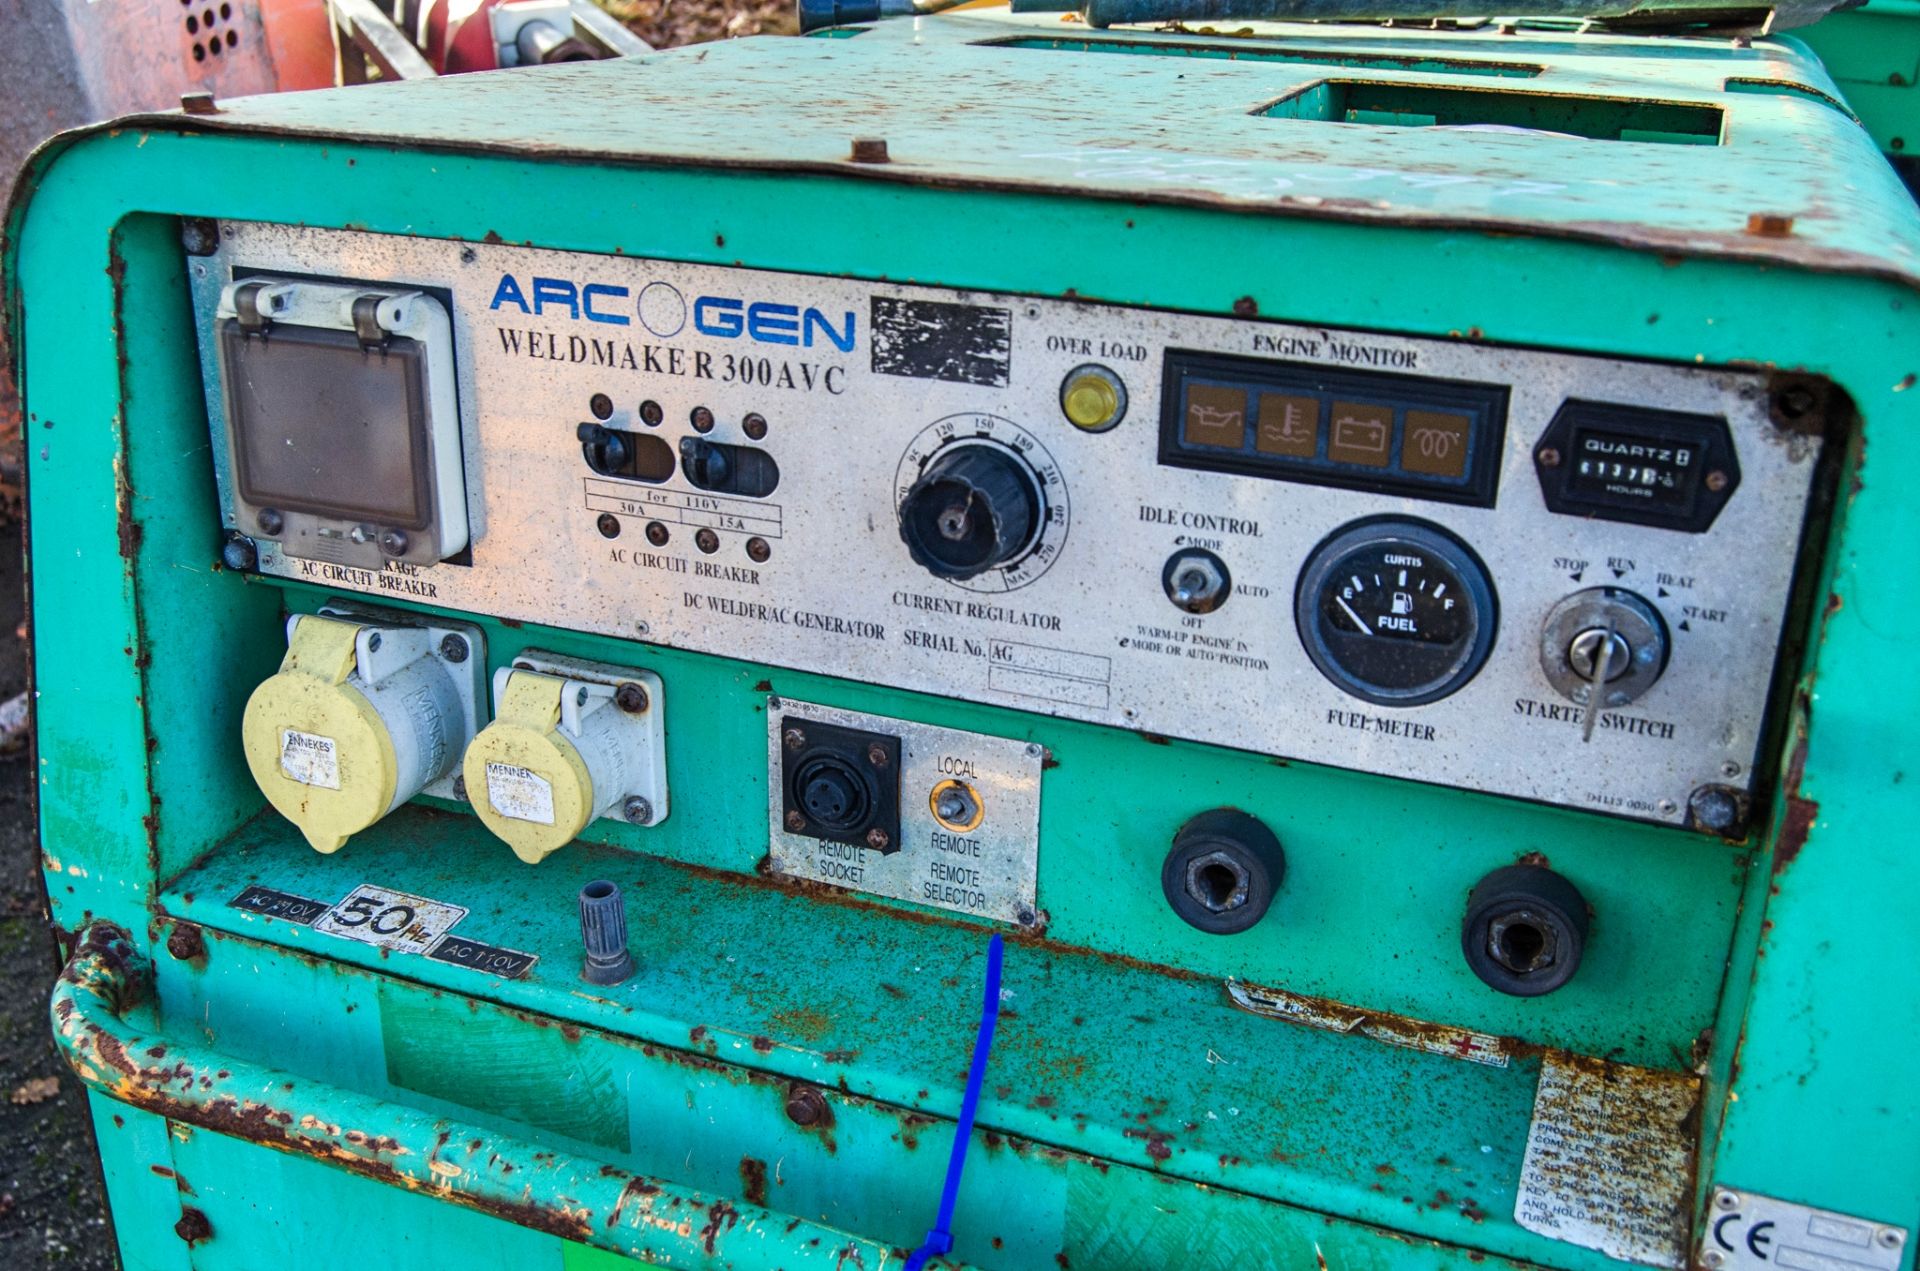 Arc Gen Weldmaker 300 AVC diesel driven fast tow welder/generator S/N: 1301807 Recorded hours: - Image 3 of 5